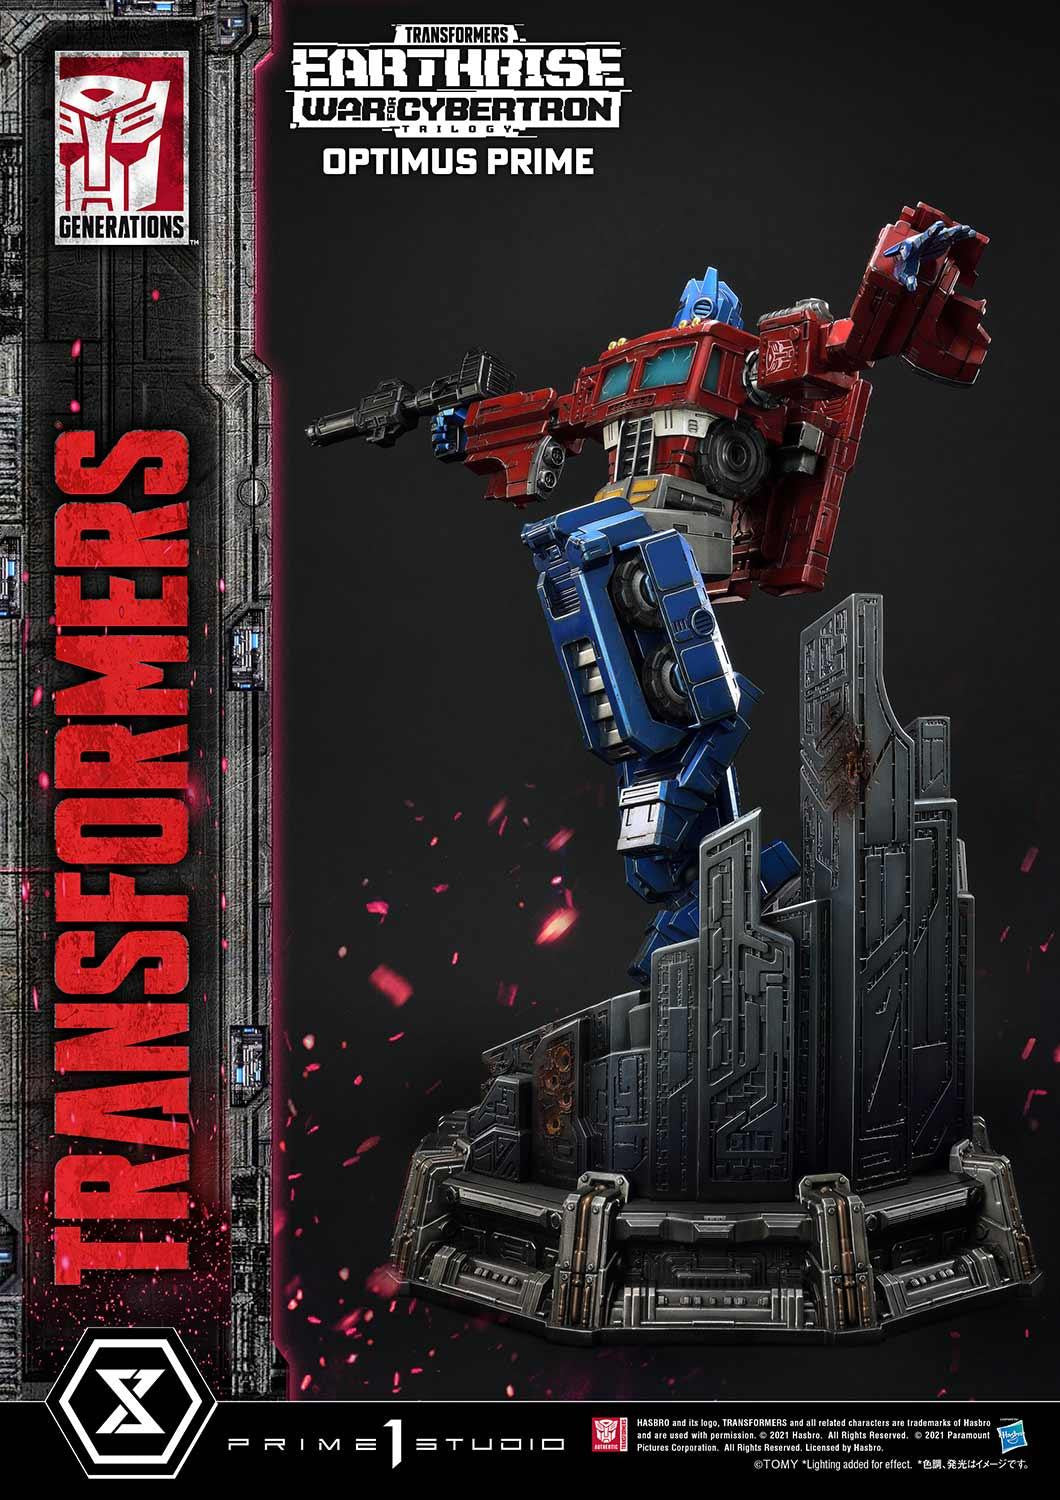 Premium Masterline Transformers Generations I Optimus Prime